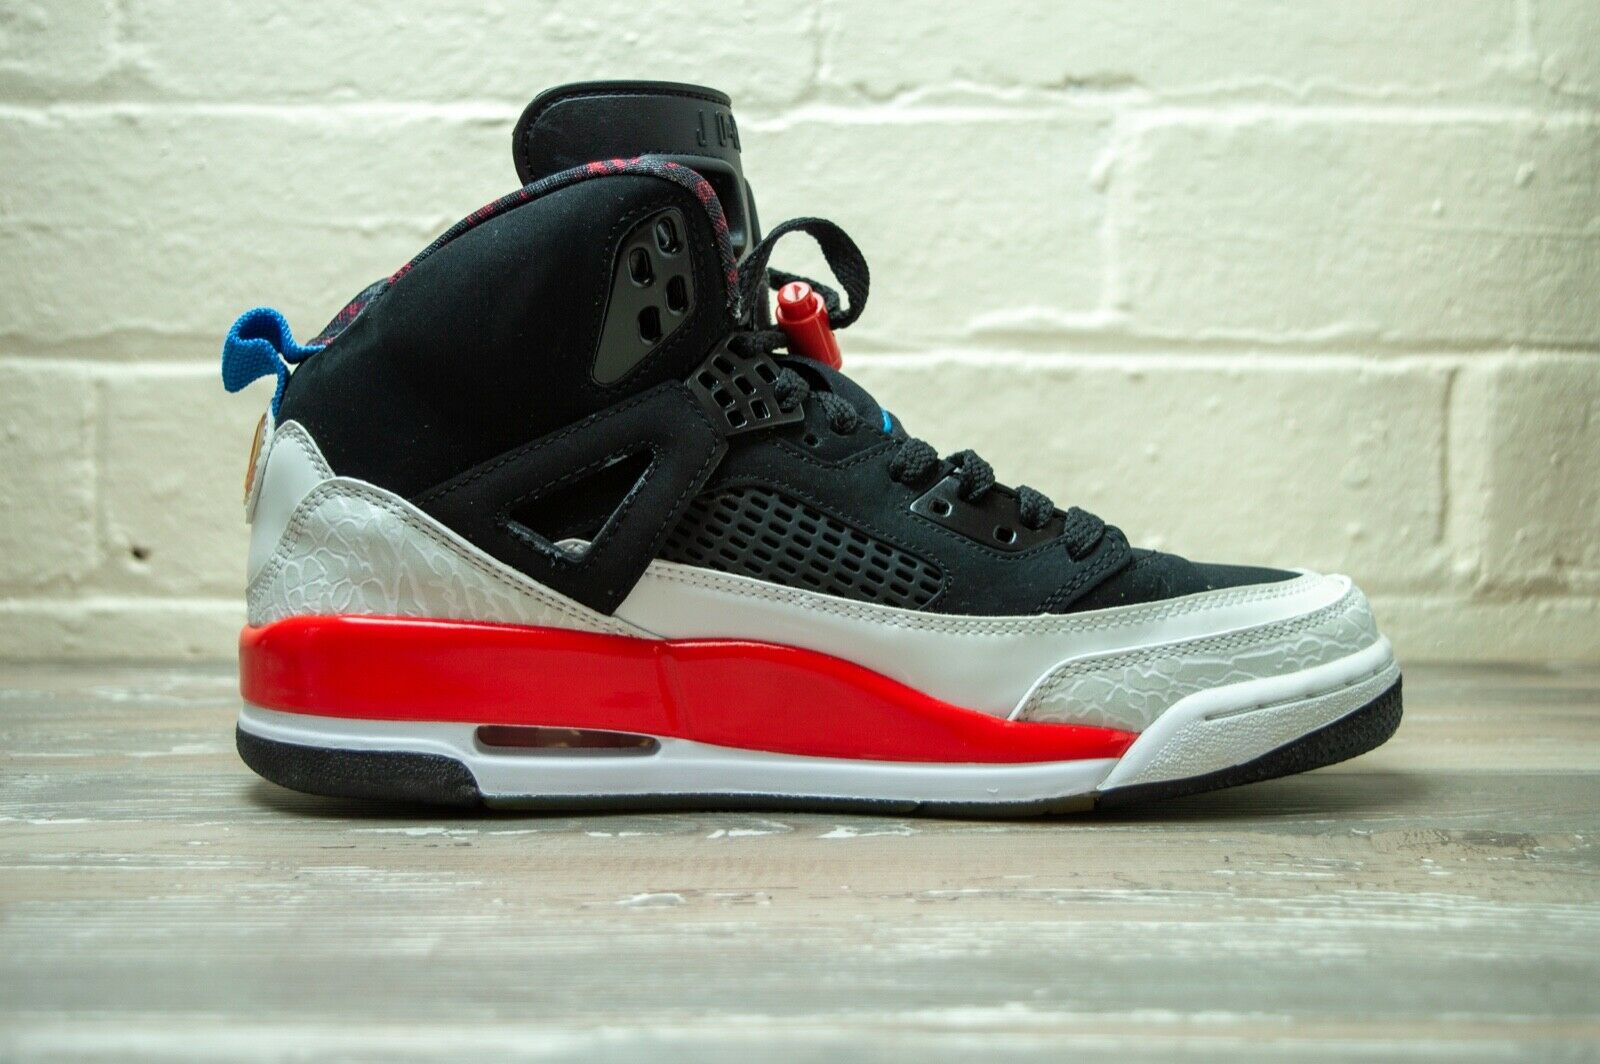 Nike Air Jordan Spizike Infrared 315371 002 -Nike Air Jordan Spizike Infrared 315371 002 -